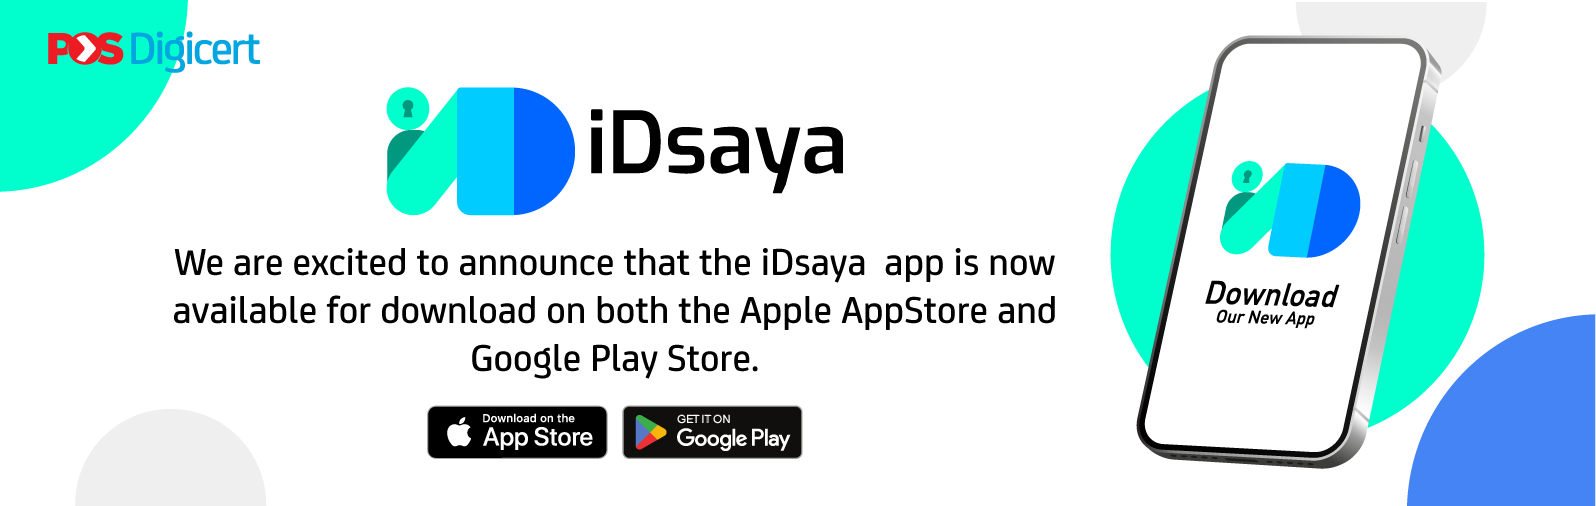 iDsaya App